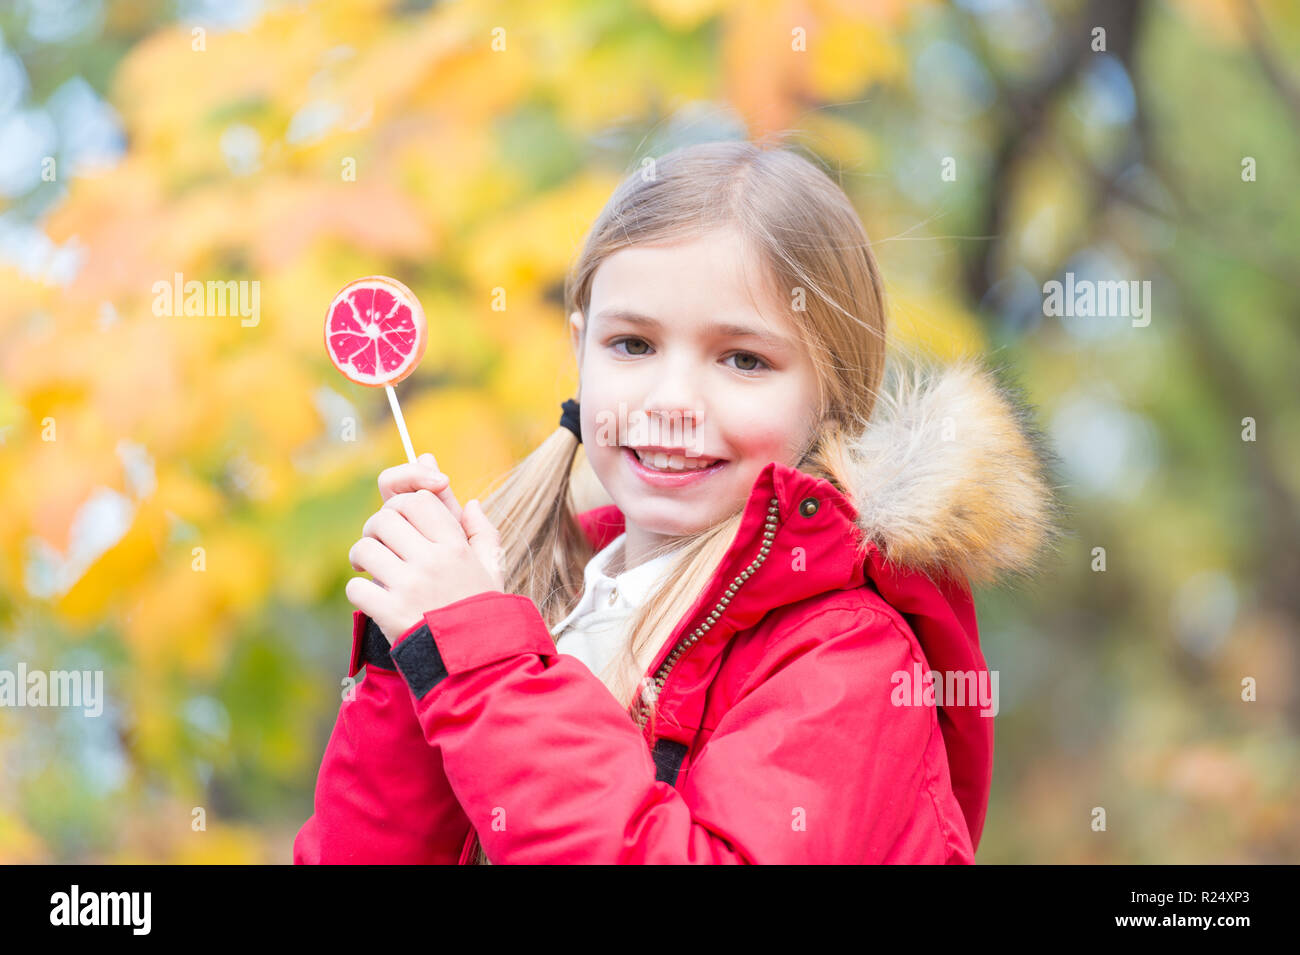 Gerne kleine Mädchen mit Süßigkeiten im Herbst Wald. Nur ein kleines Mädchen. Candy Girl. Glückliche Kindheit. Herbst kam. Stockfoto